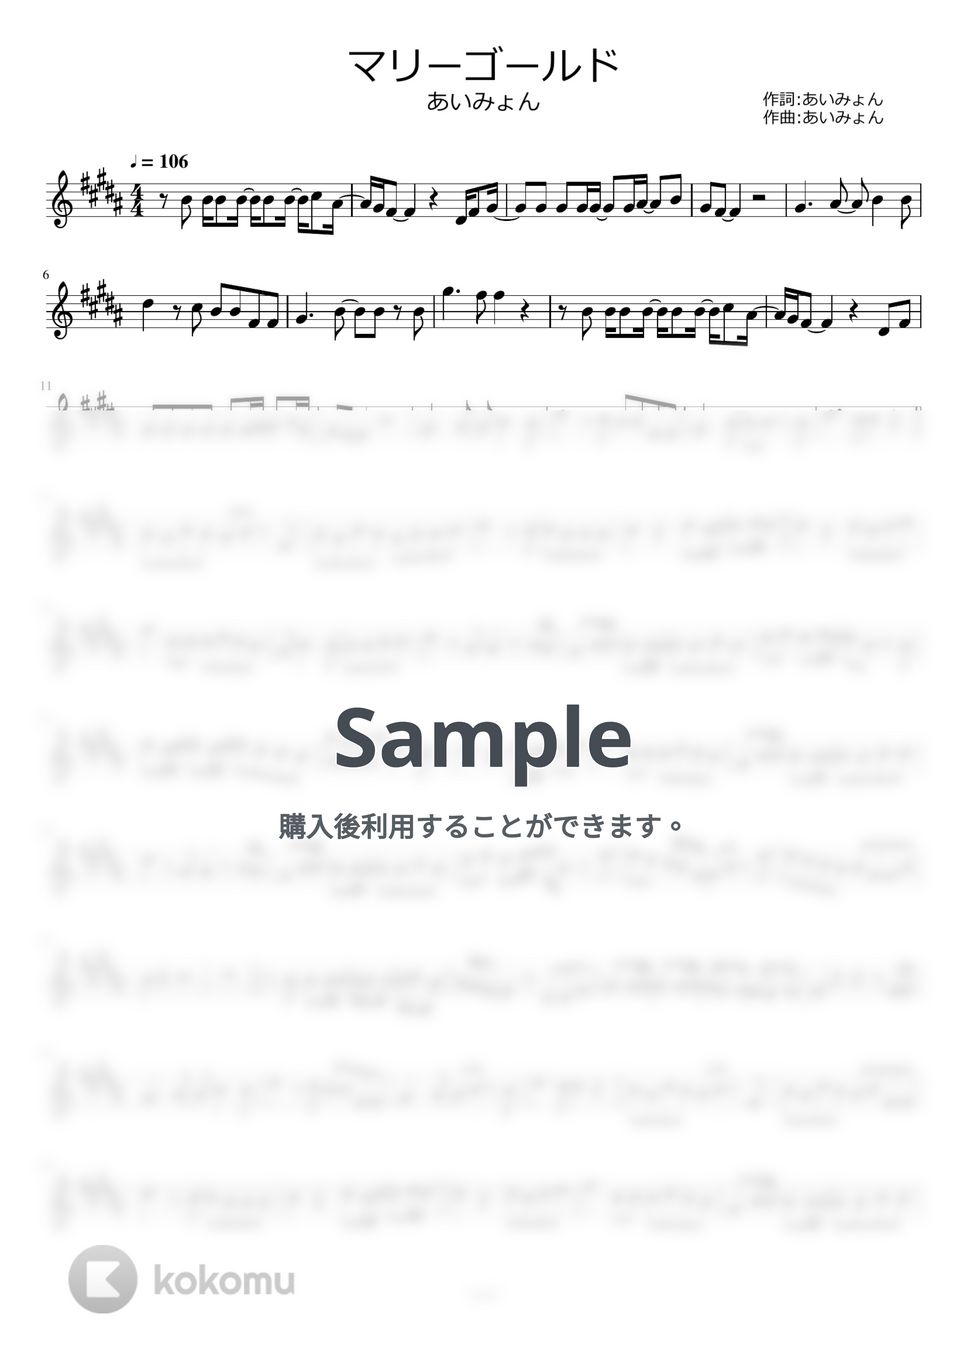 あいみょん - マリーゴールド by ayako music school